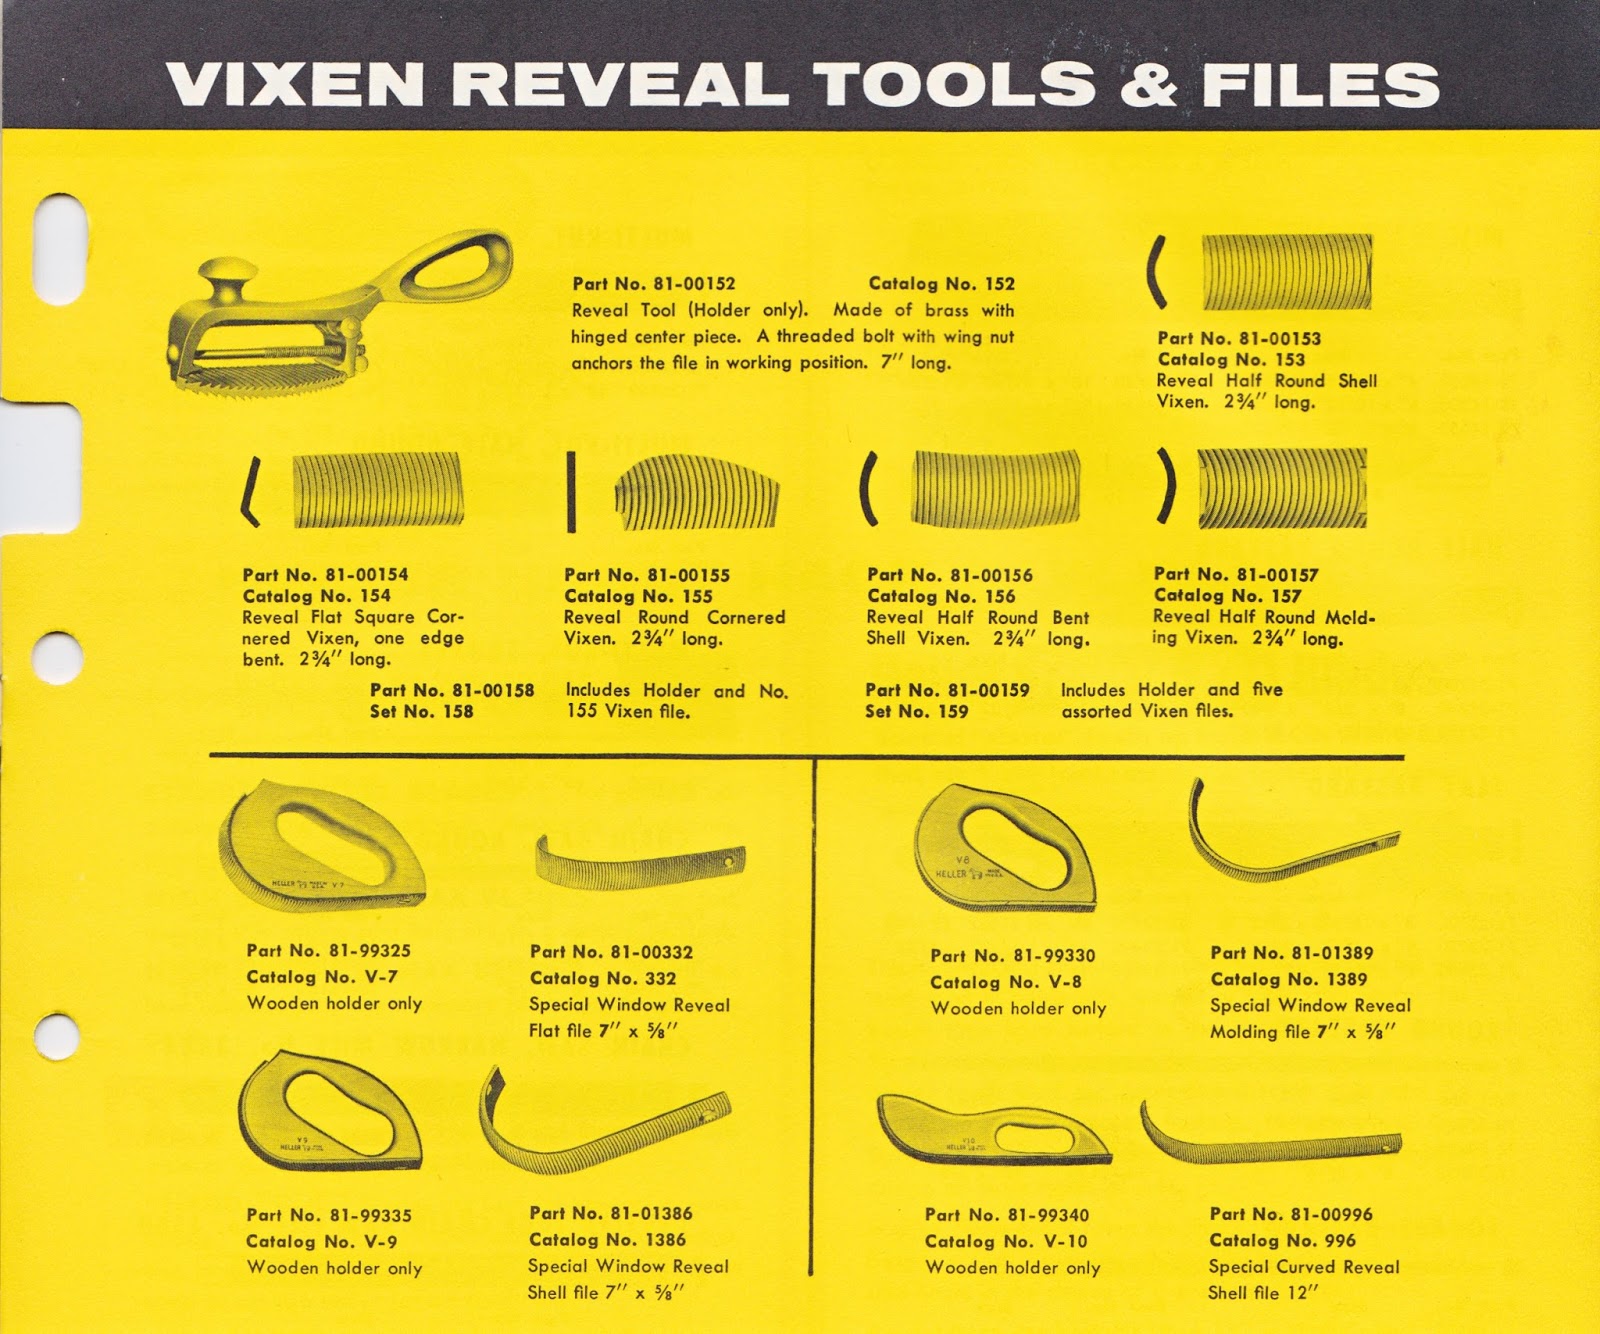 Vixen body files